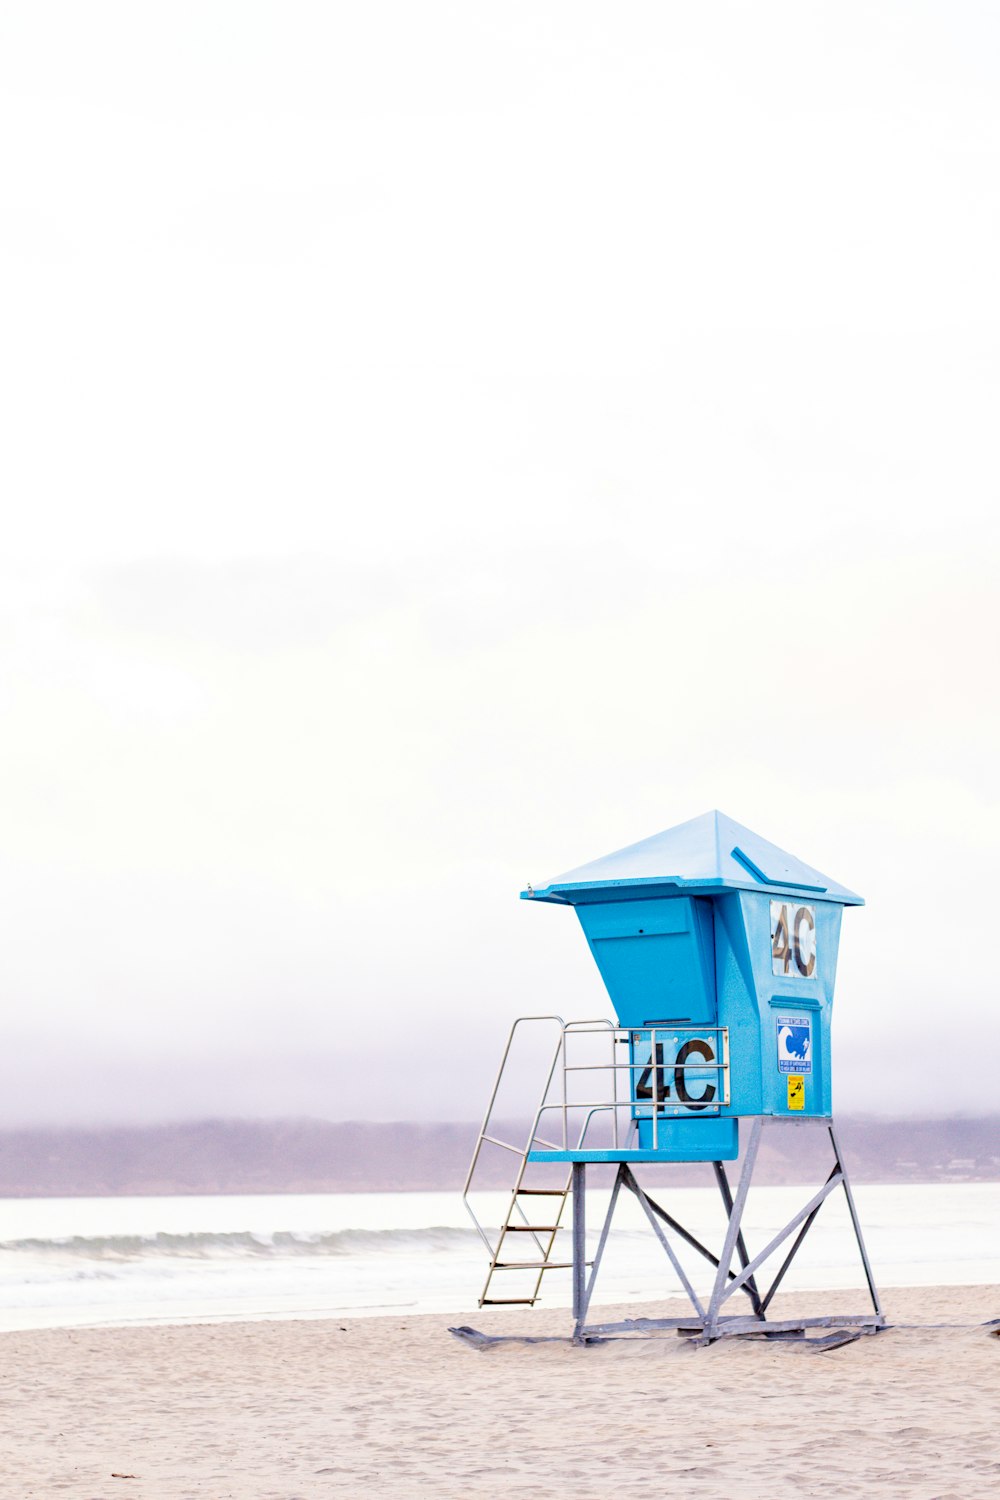 blue lifeguard house near seashore